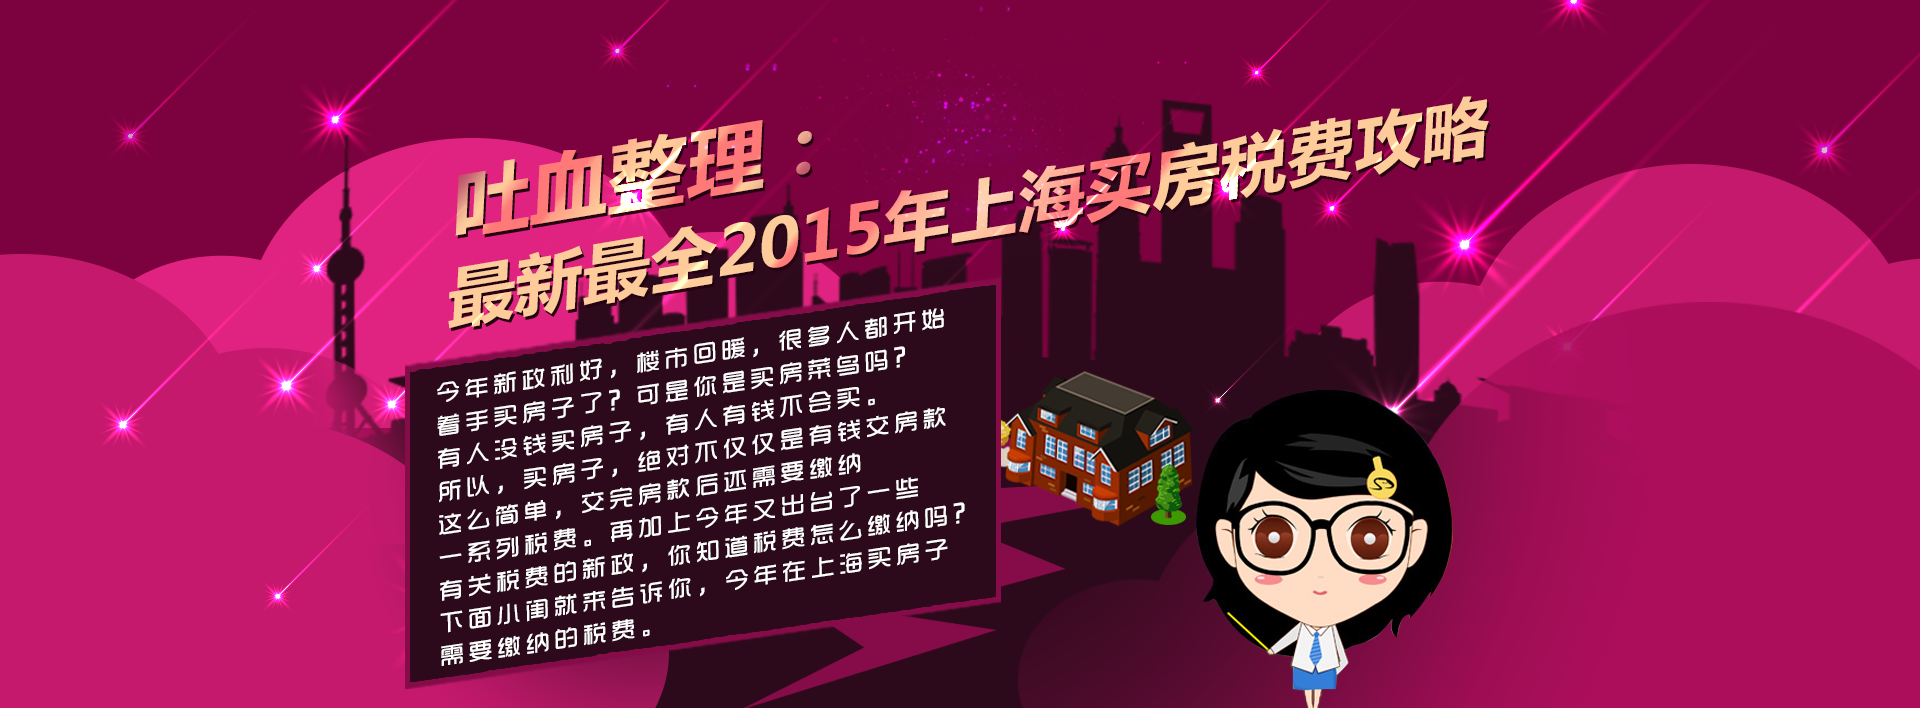 吐血整理:最新最全2015年上海买房税费攻略